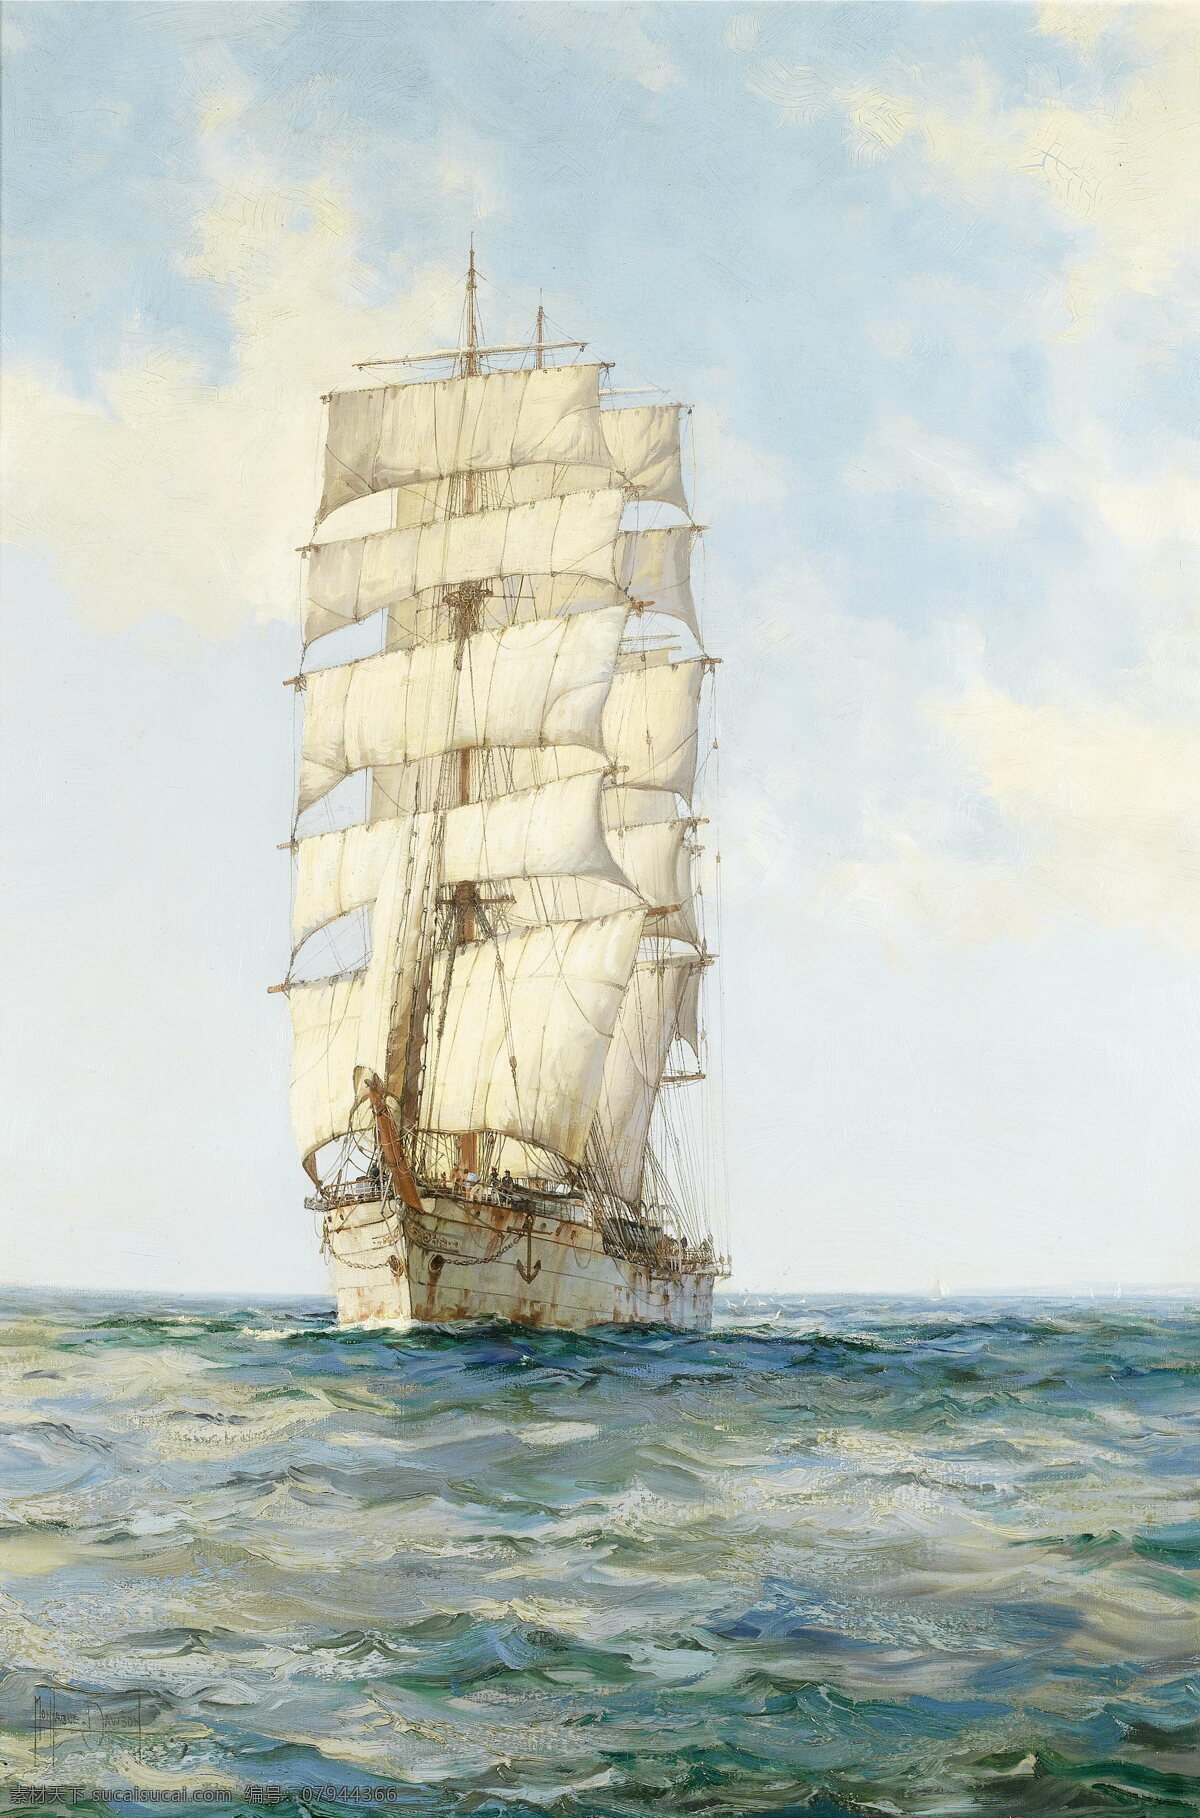 海上帆船 欧洲油画 大海 海水 大帆船 船只 船舶 蓝天 白云 文化艺术 绘画书法